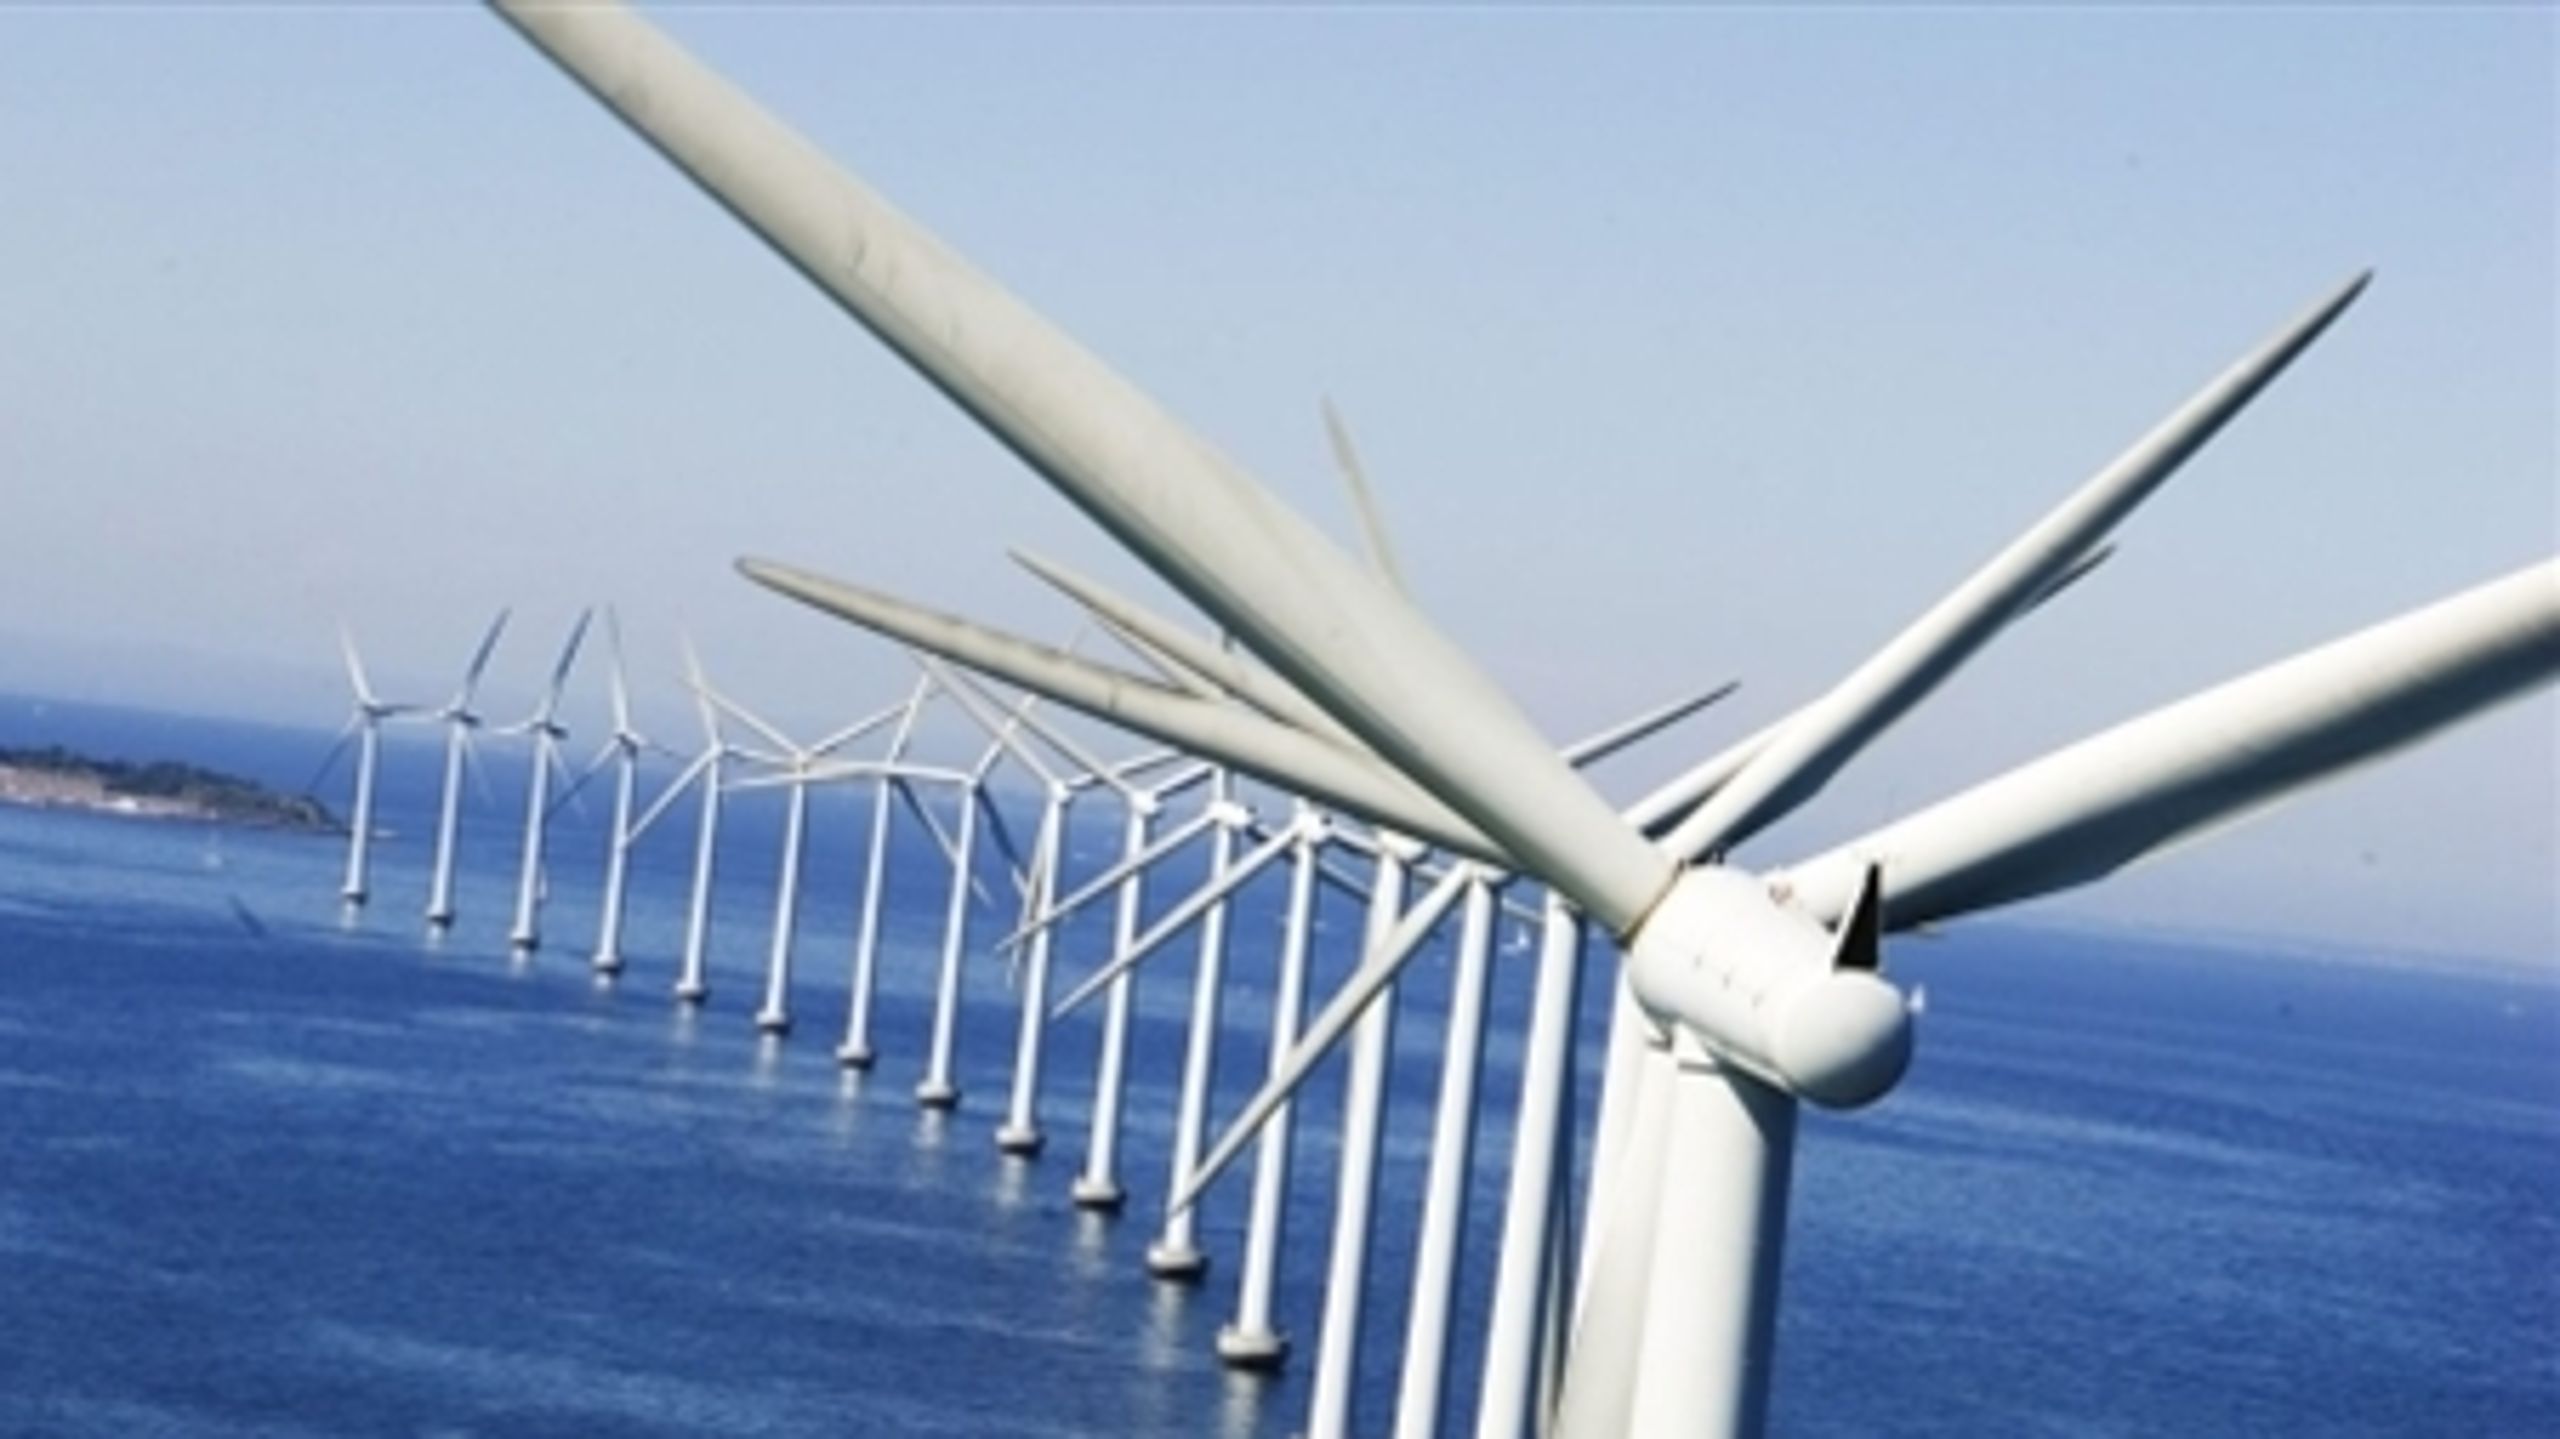 Trods fald i medlemstal er 80 procent af den samlede vindmøllekapacitet i Danmark medlem af Danmarks vindmølleforening.